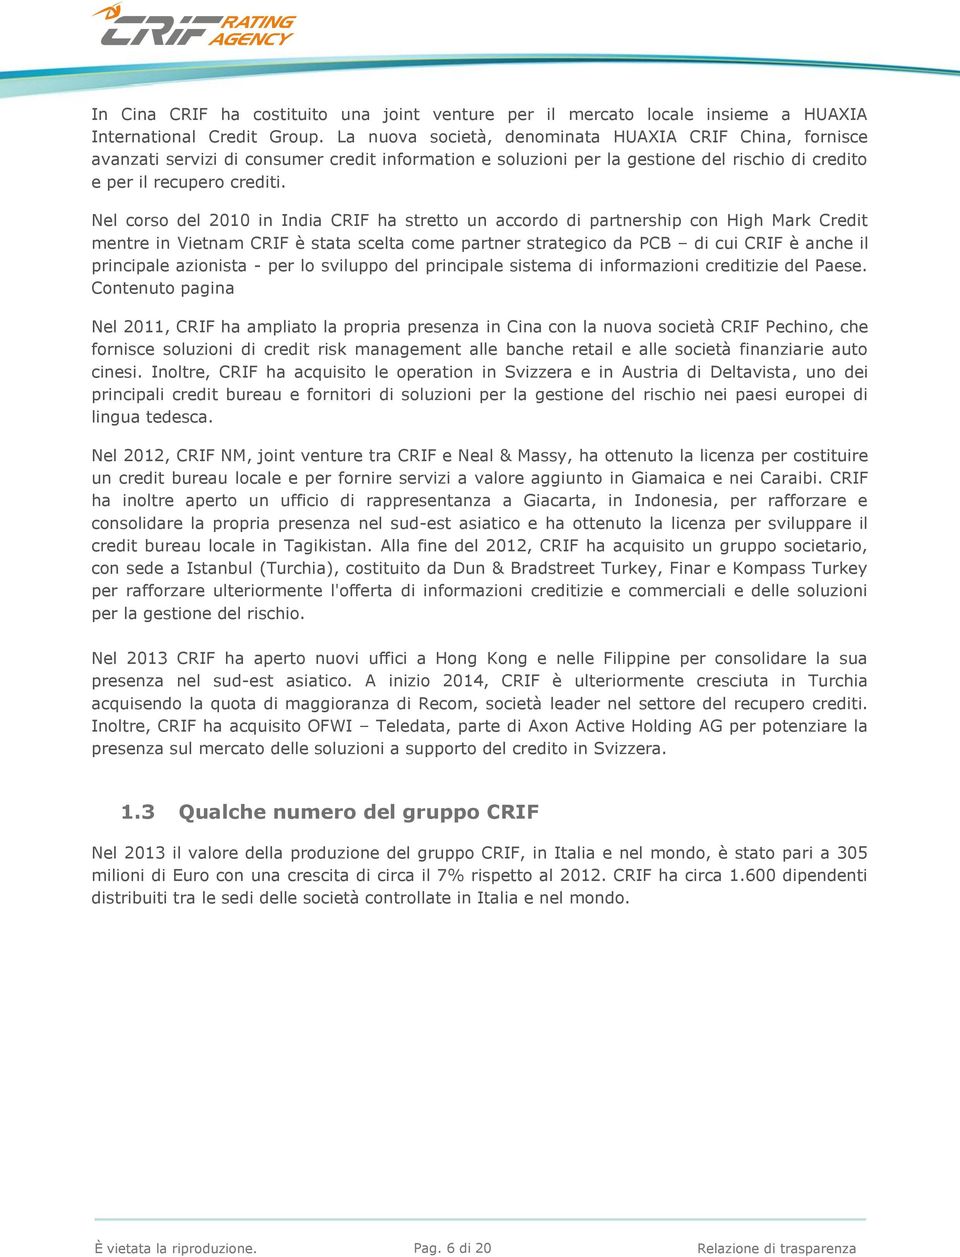 Nel corso del 2010 in India CRIF ha stretto un accordo di partnership con High Mark Credit mentre in Vietnam CRIF è stata scelta come partner strategico da PCB di cui CRIF è anche il principale